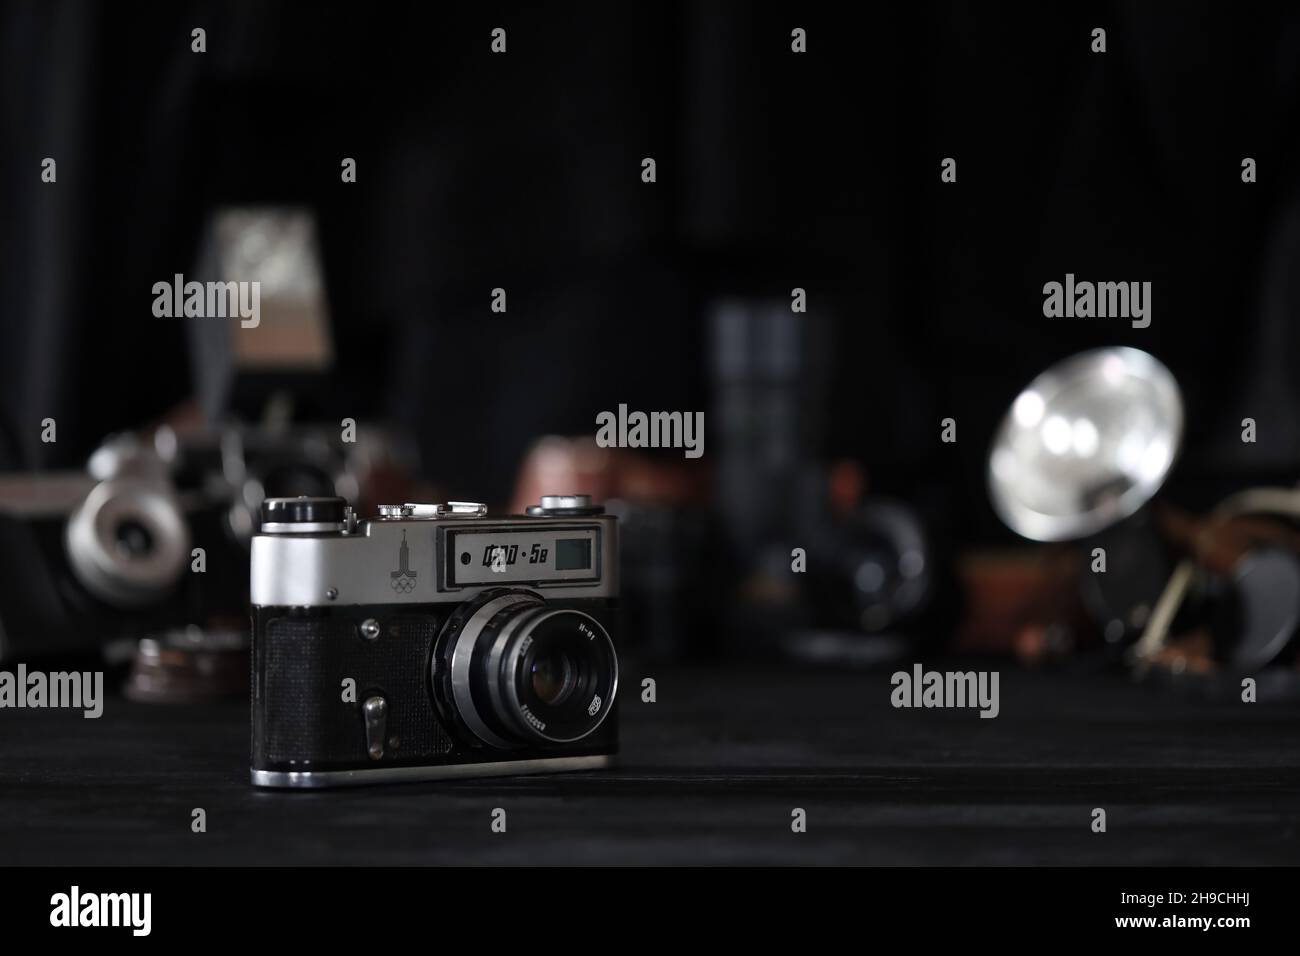 CHARKOV, UKRAINE - 27. APRIL 2021: Fed 5b Filmkamera und eine weitere alte Retro-Fotoausrüstung auf schwarzem Holztisch in der Dunkelkammer des Fotografen. Phot Stockfoto